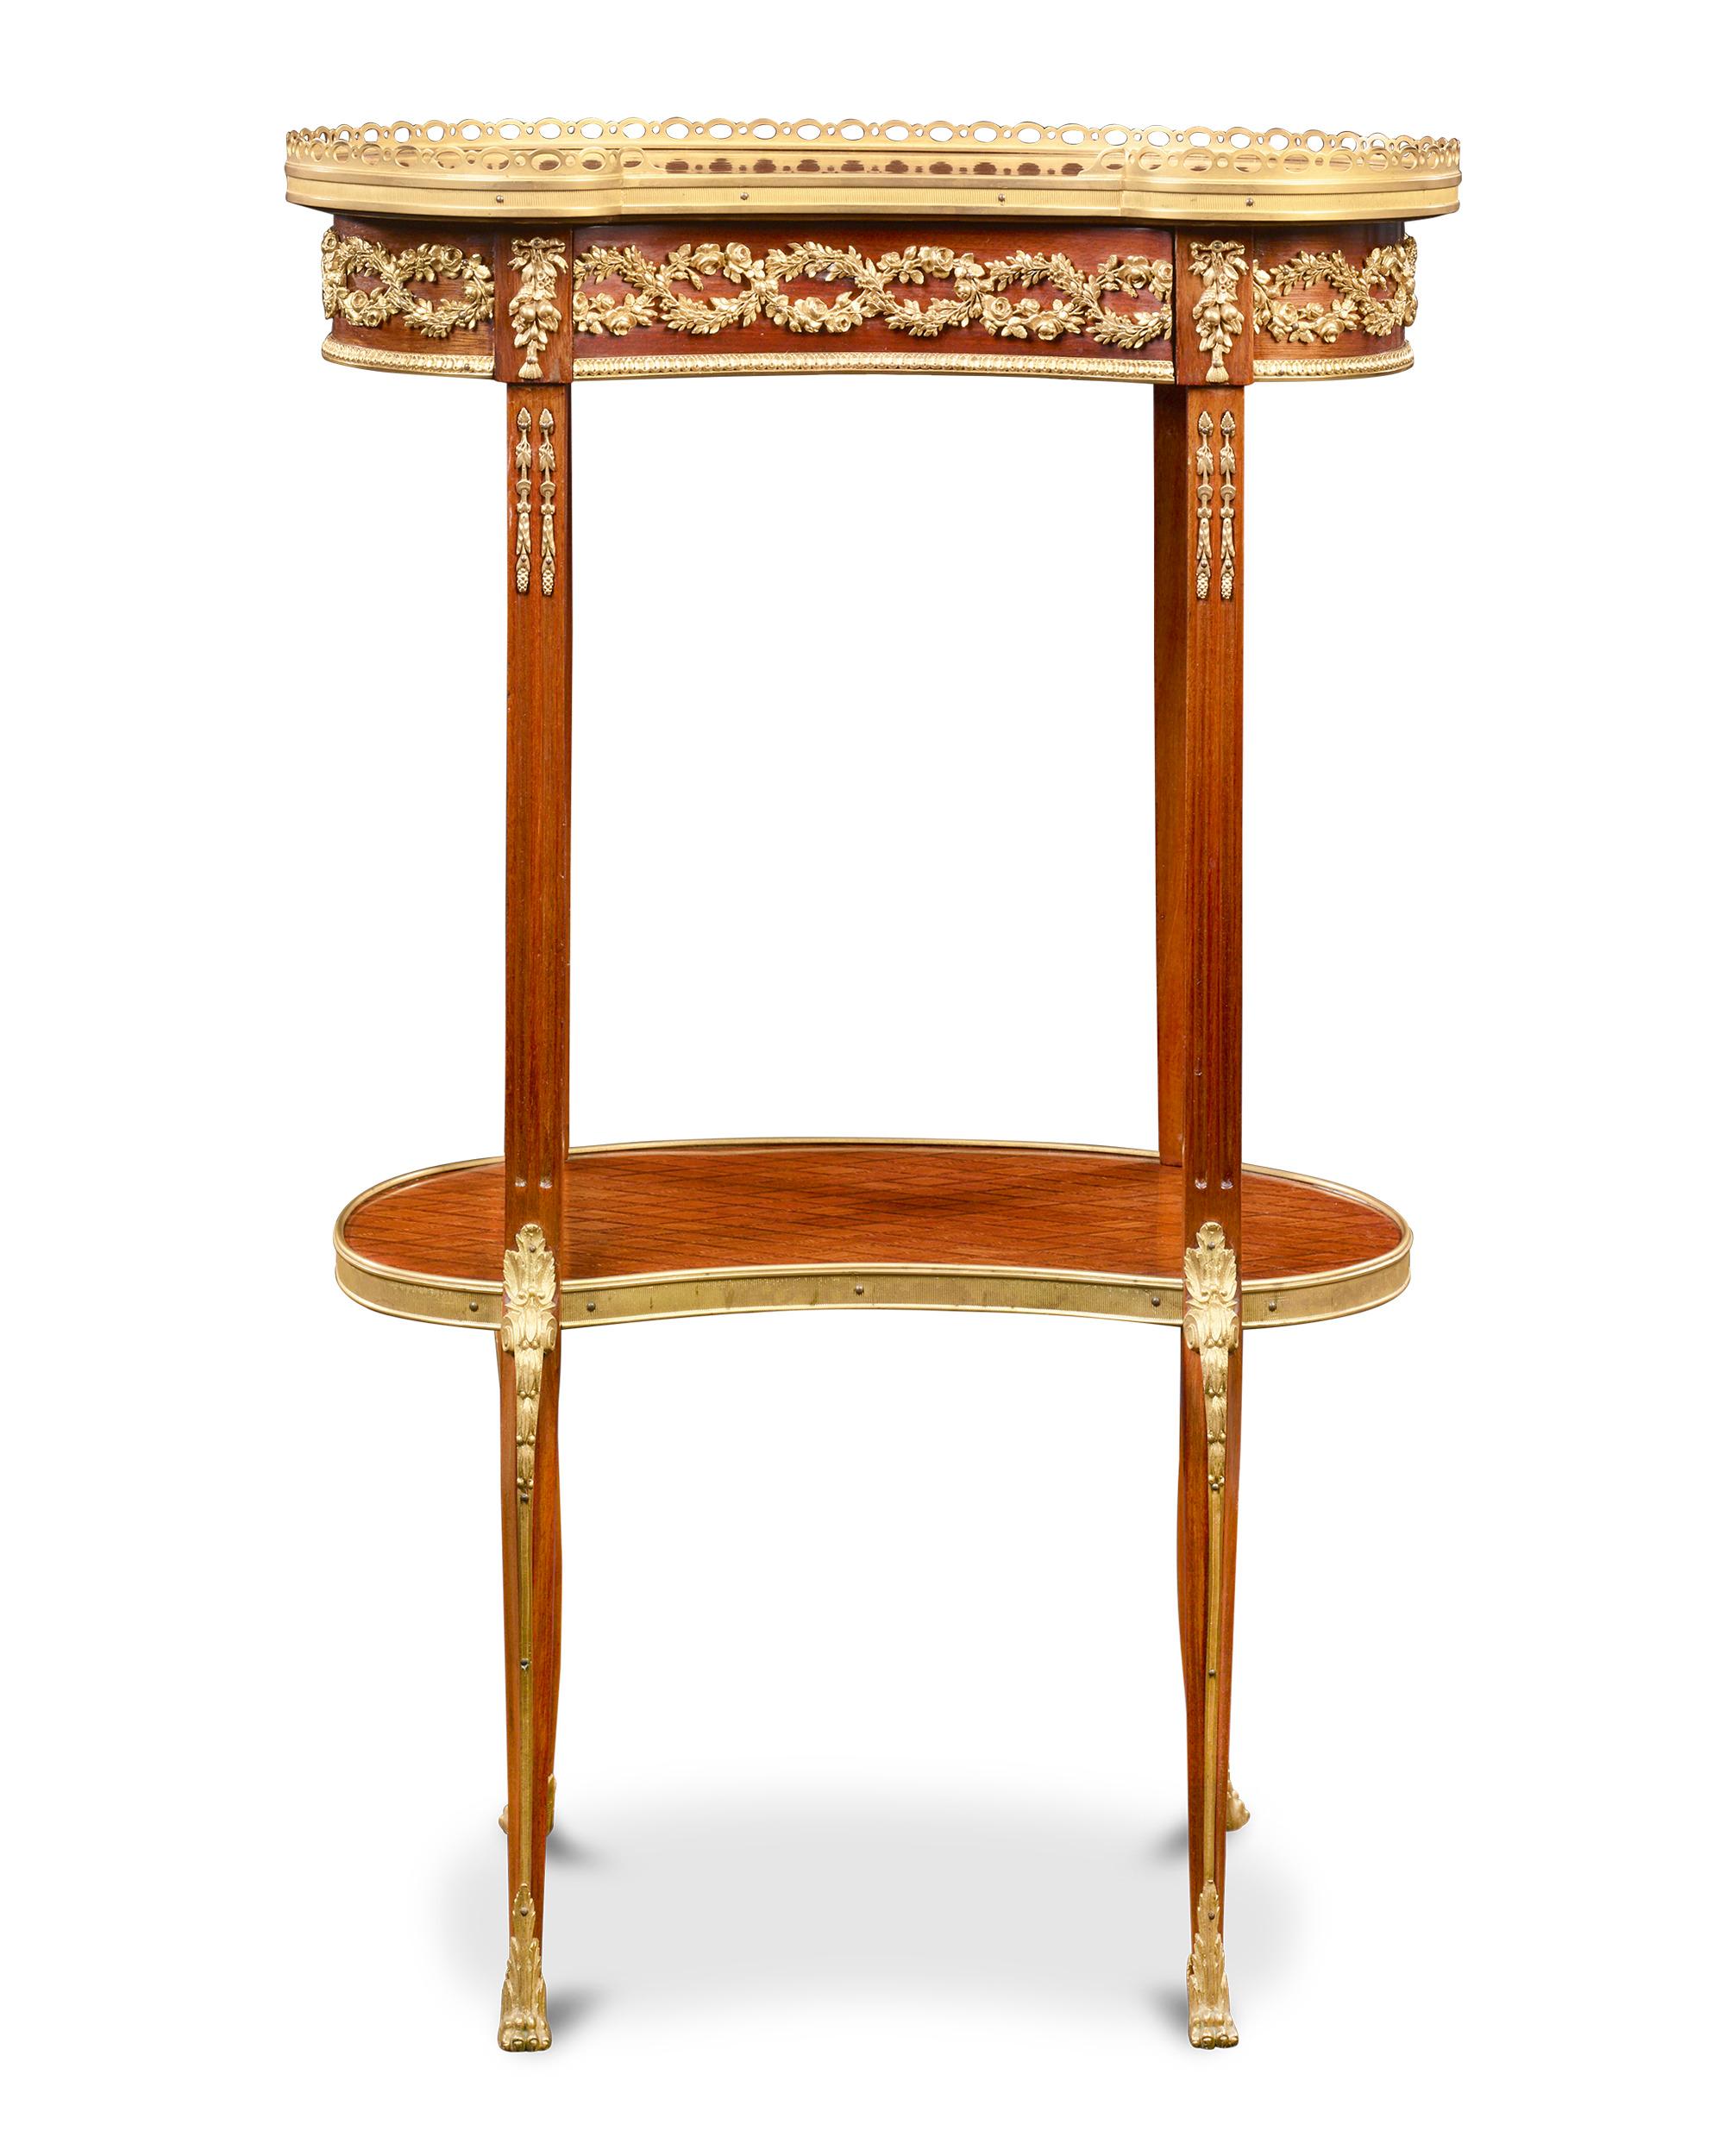 Dieser elegante, nierenförmige französische Beistelltisch im Louis-XVI-Stil ist mit einer reichen Rautenintarsie verziert. Die natürliche Wärme des Holzes schimmert durch und wird durch die klassisch inspirierten Doré-Bronze-Beschläge makellos